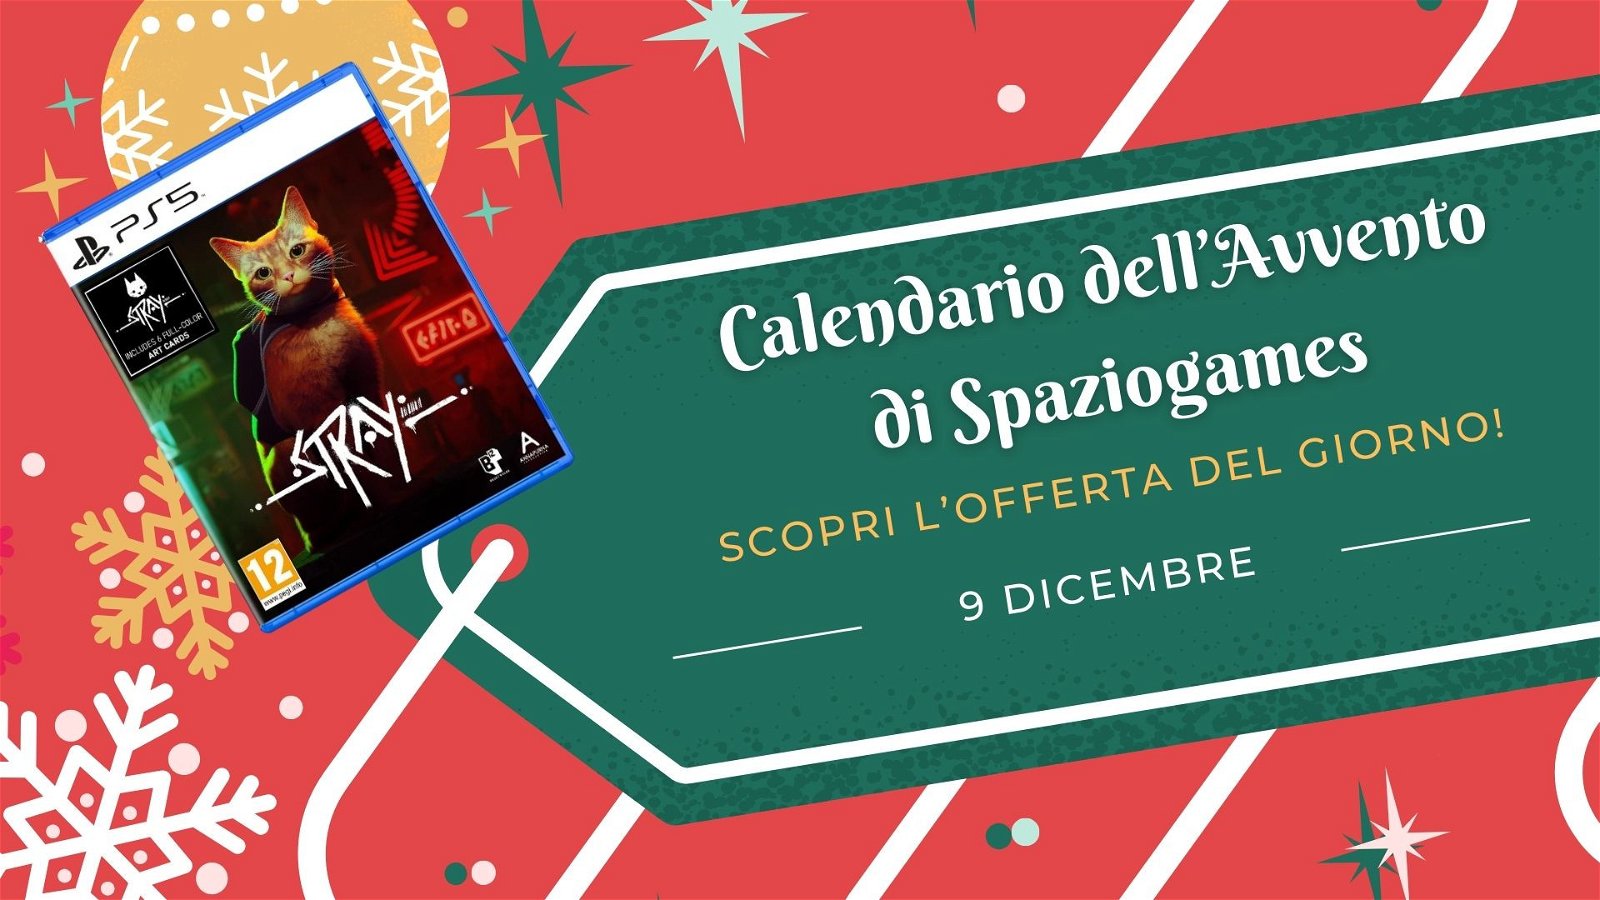 Calendario dell'avvento di Spaziogames: scopri l'offerta del 9 dicembre -  SpazioGames